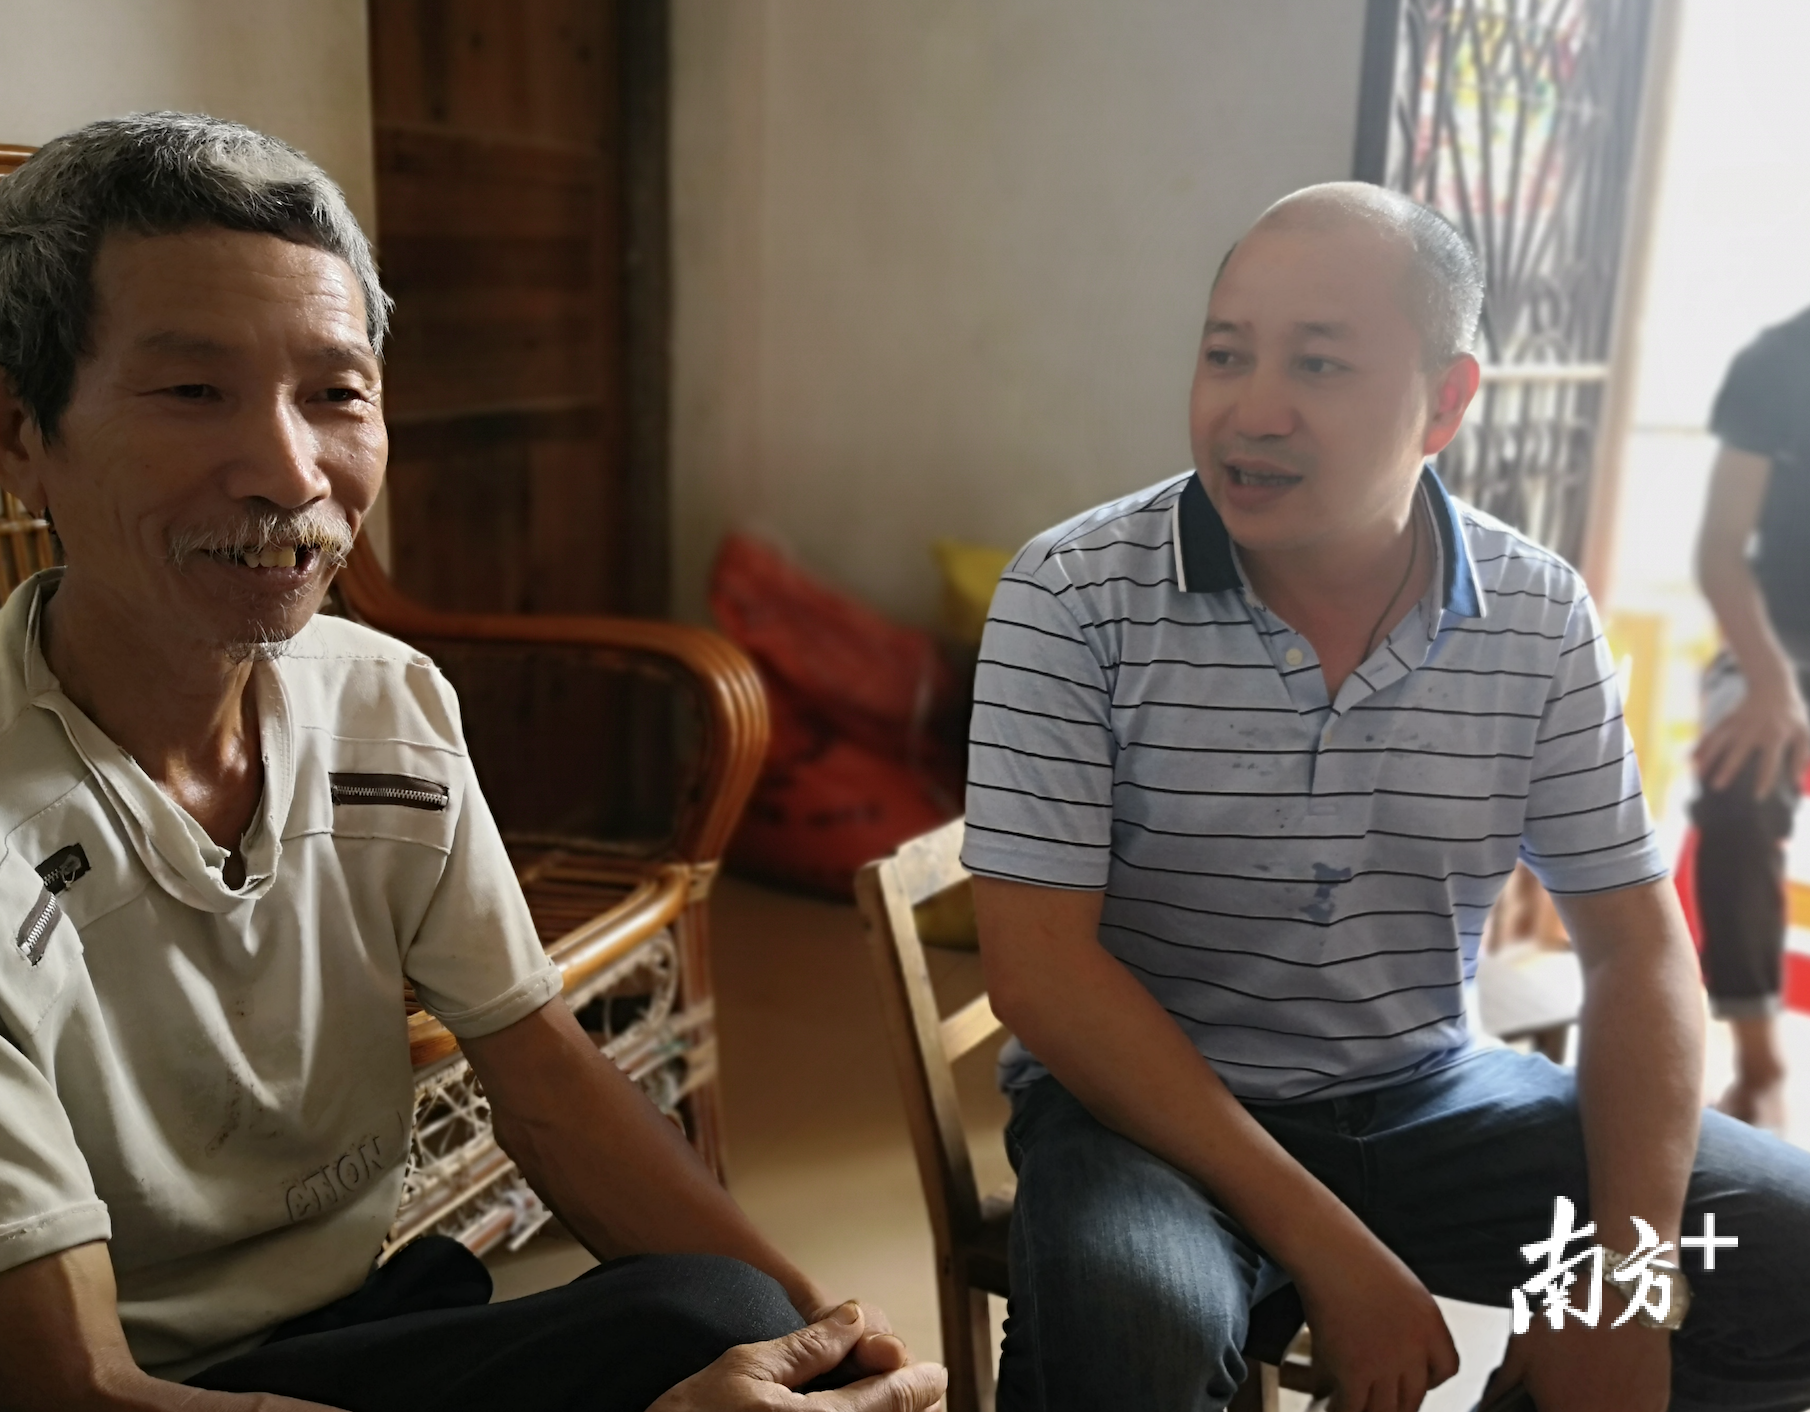 禅城区驻黄竹垌村第一书记刘君到贫困户家座谈。罗湛贤 摄